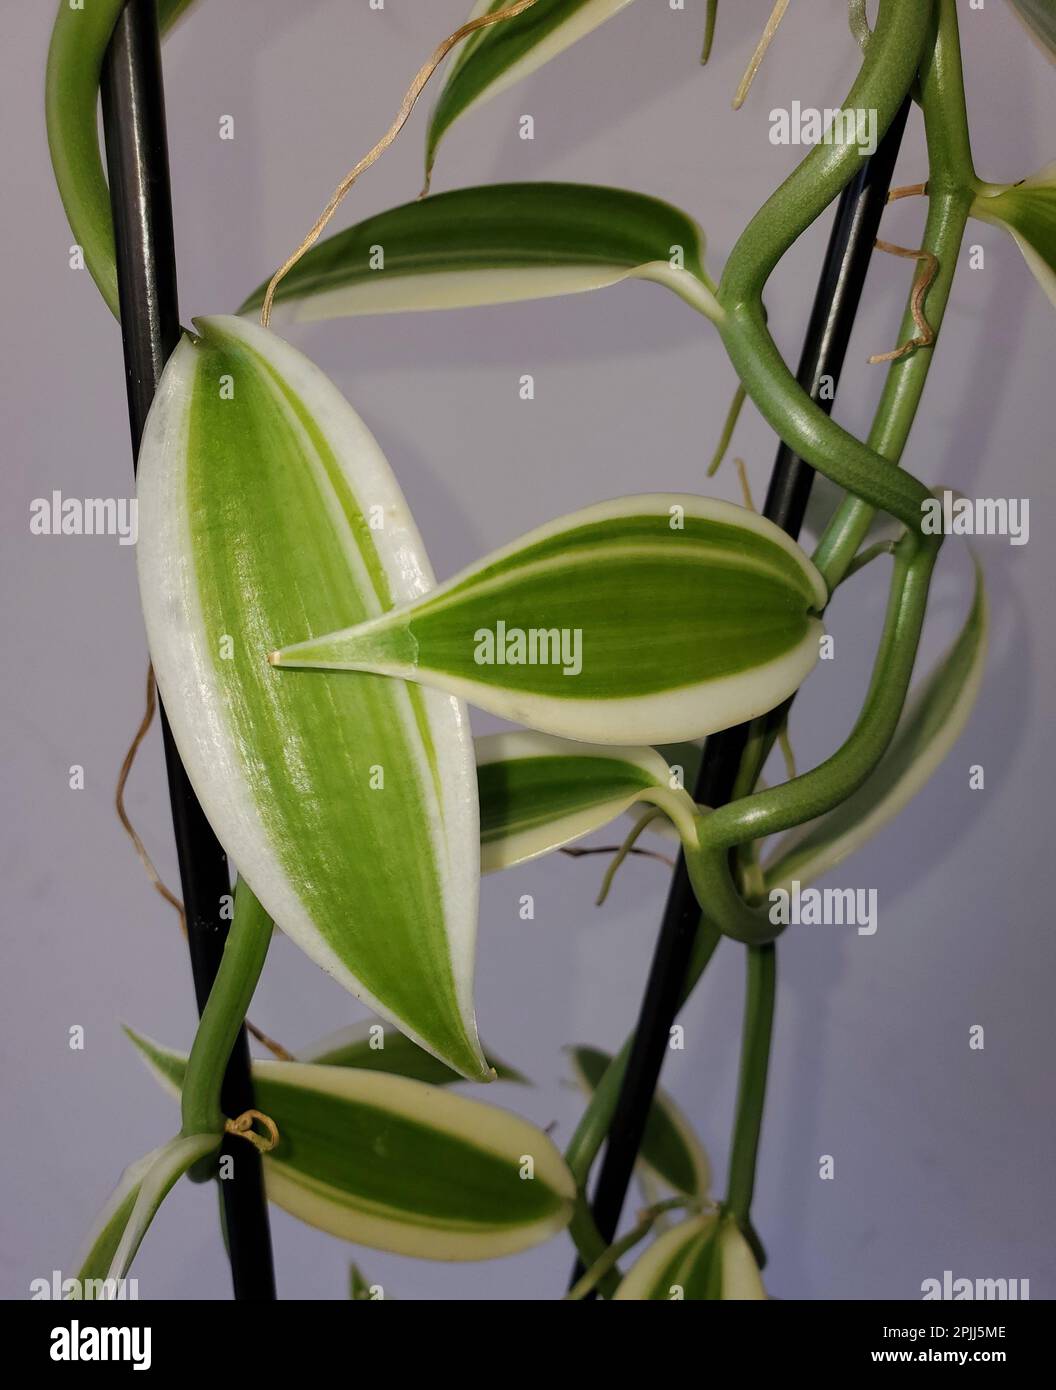 Gros plan sur les feuilles blanches et vertes de l'orchidée de vanille planifolia Banque D'Images